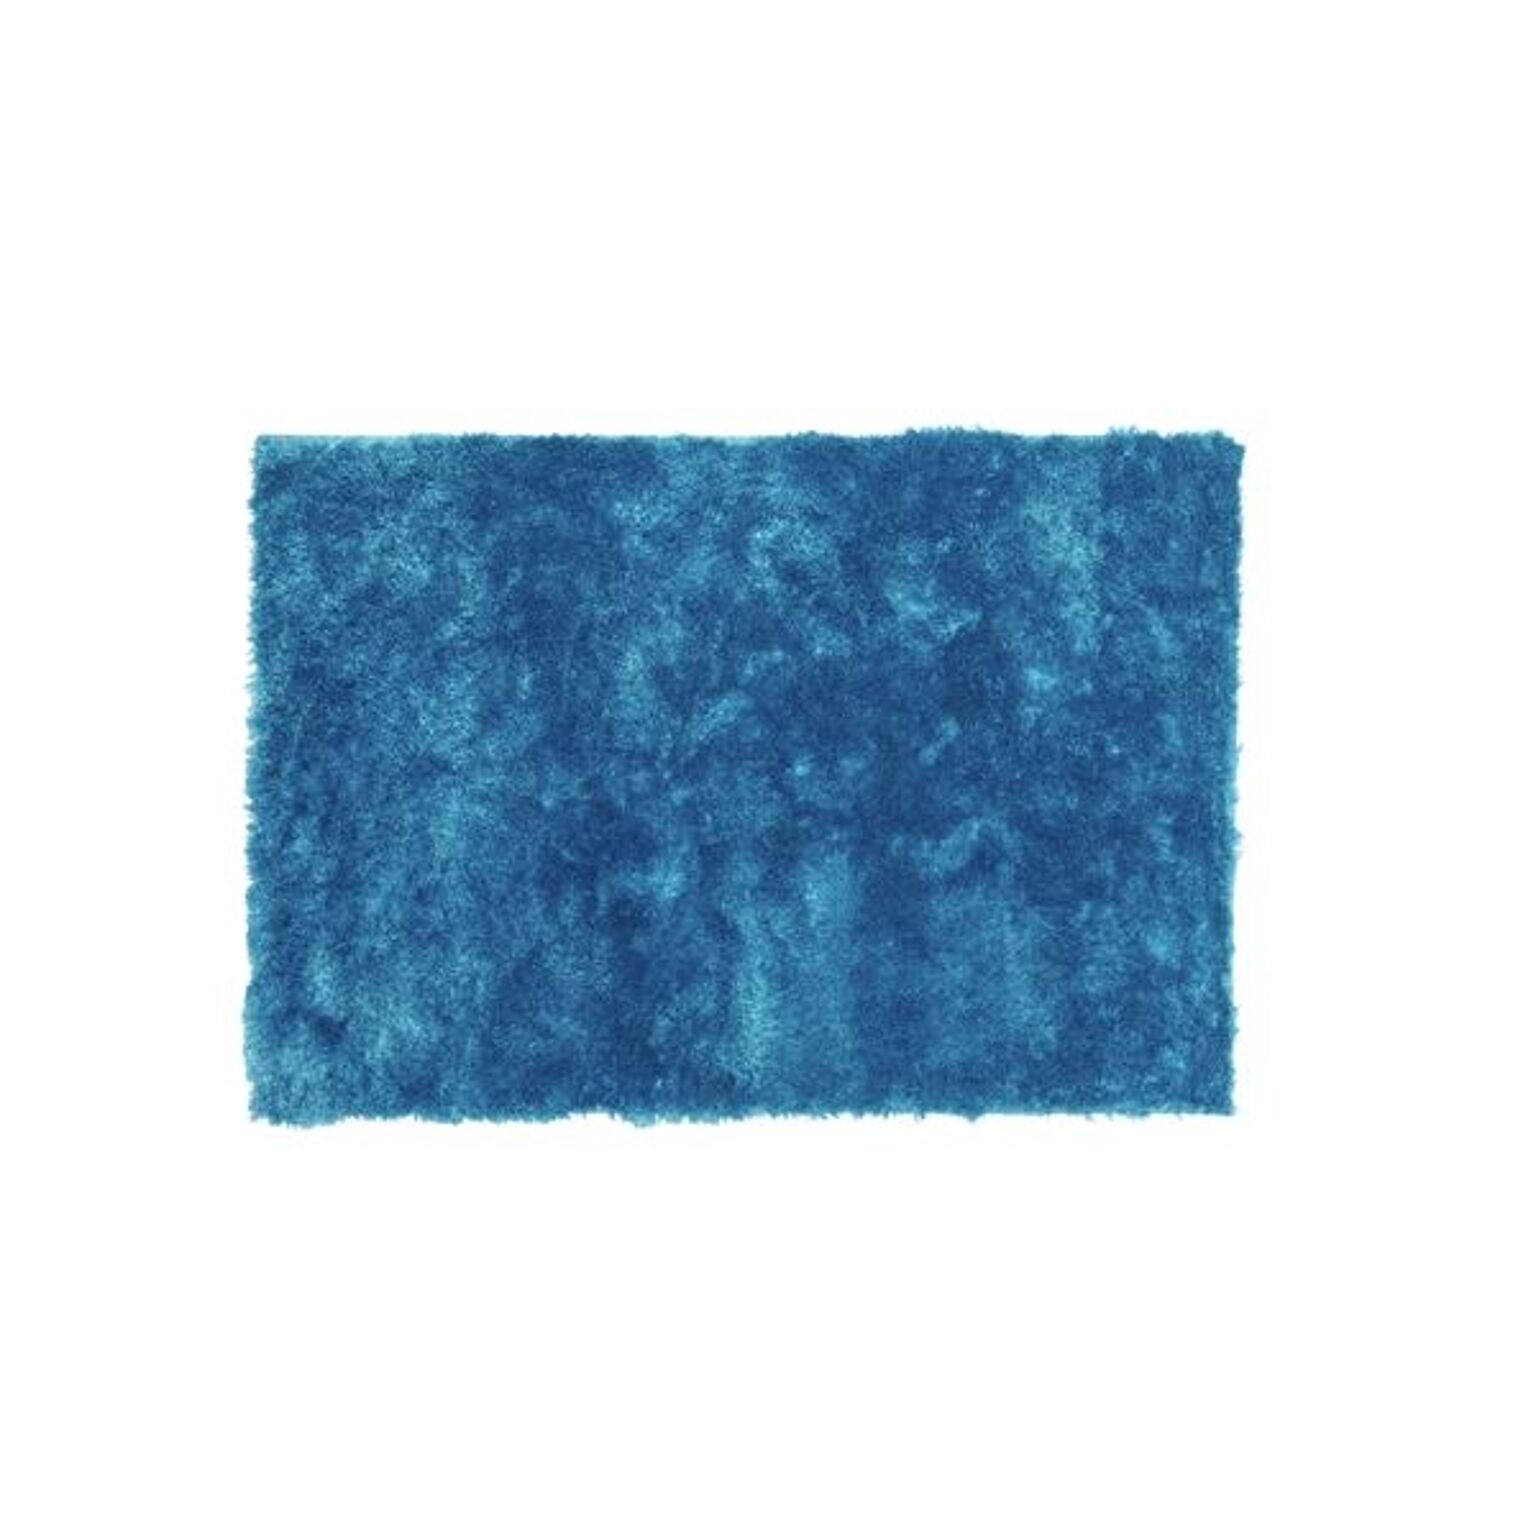 ラグマット 絨毯 90×130cm ブルー 長方形 裏面 防滑加工 シャギーラグマット リビング ダイニング ベッドルーム 寝室